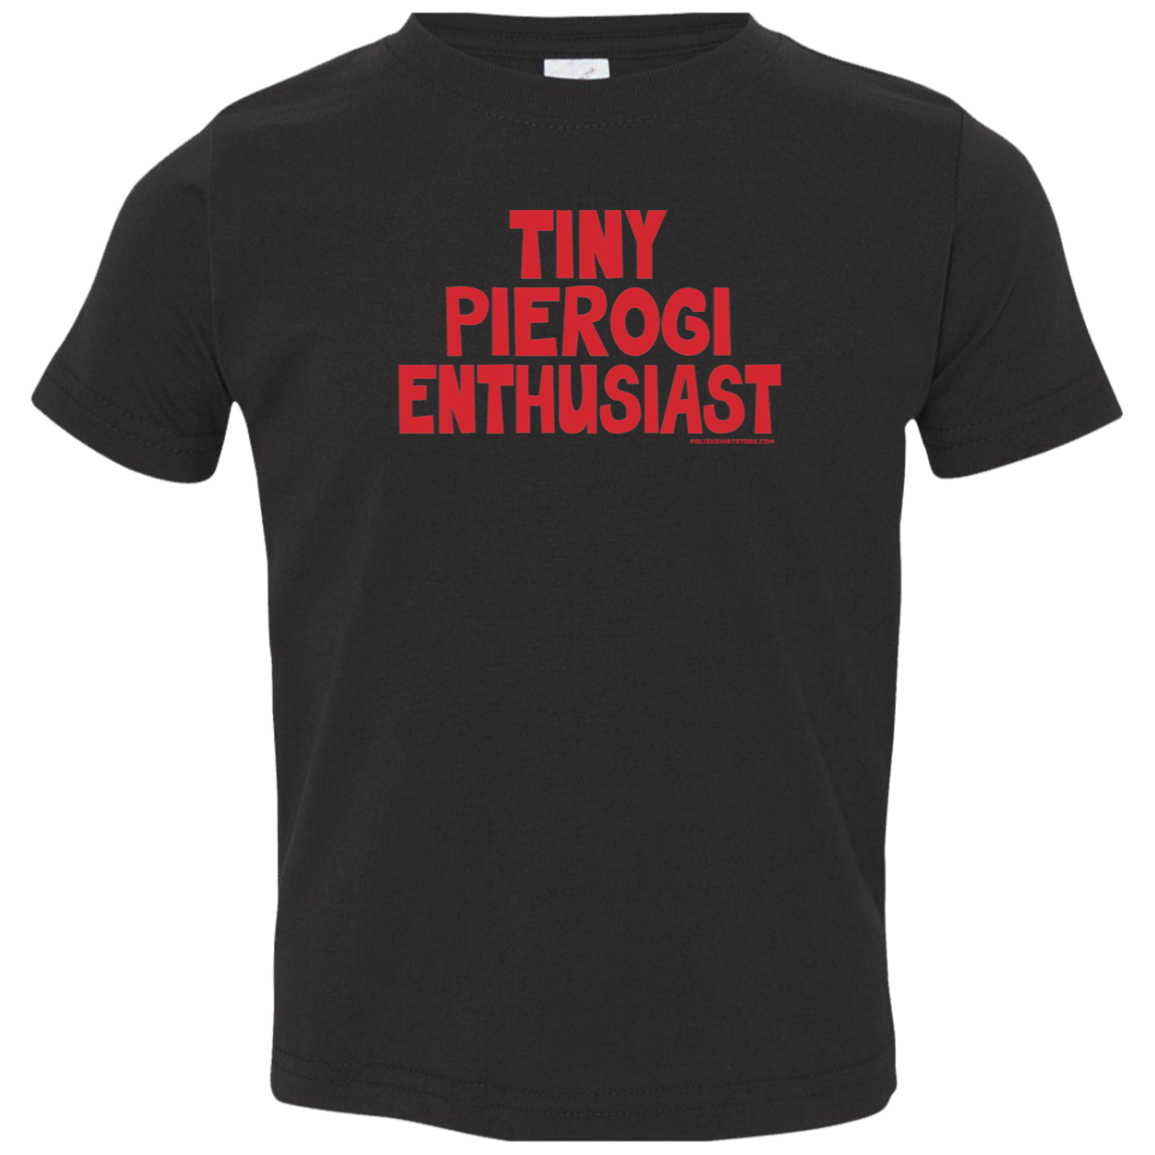 Tiny Pierogi Enthusiast Infant & Toddler T-Shirt Apparel CustomCat Toddler T-Shirt Black 2T